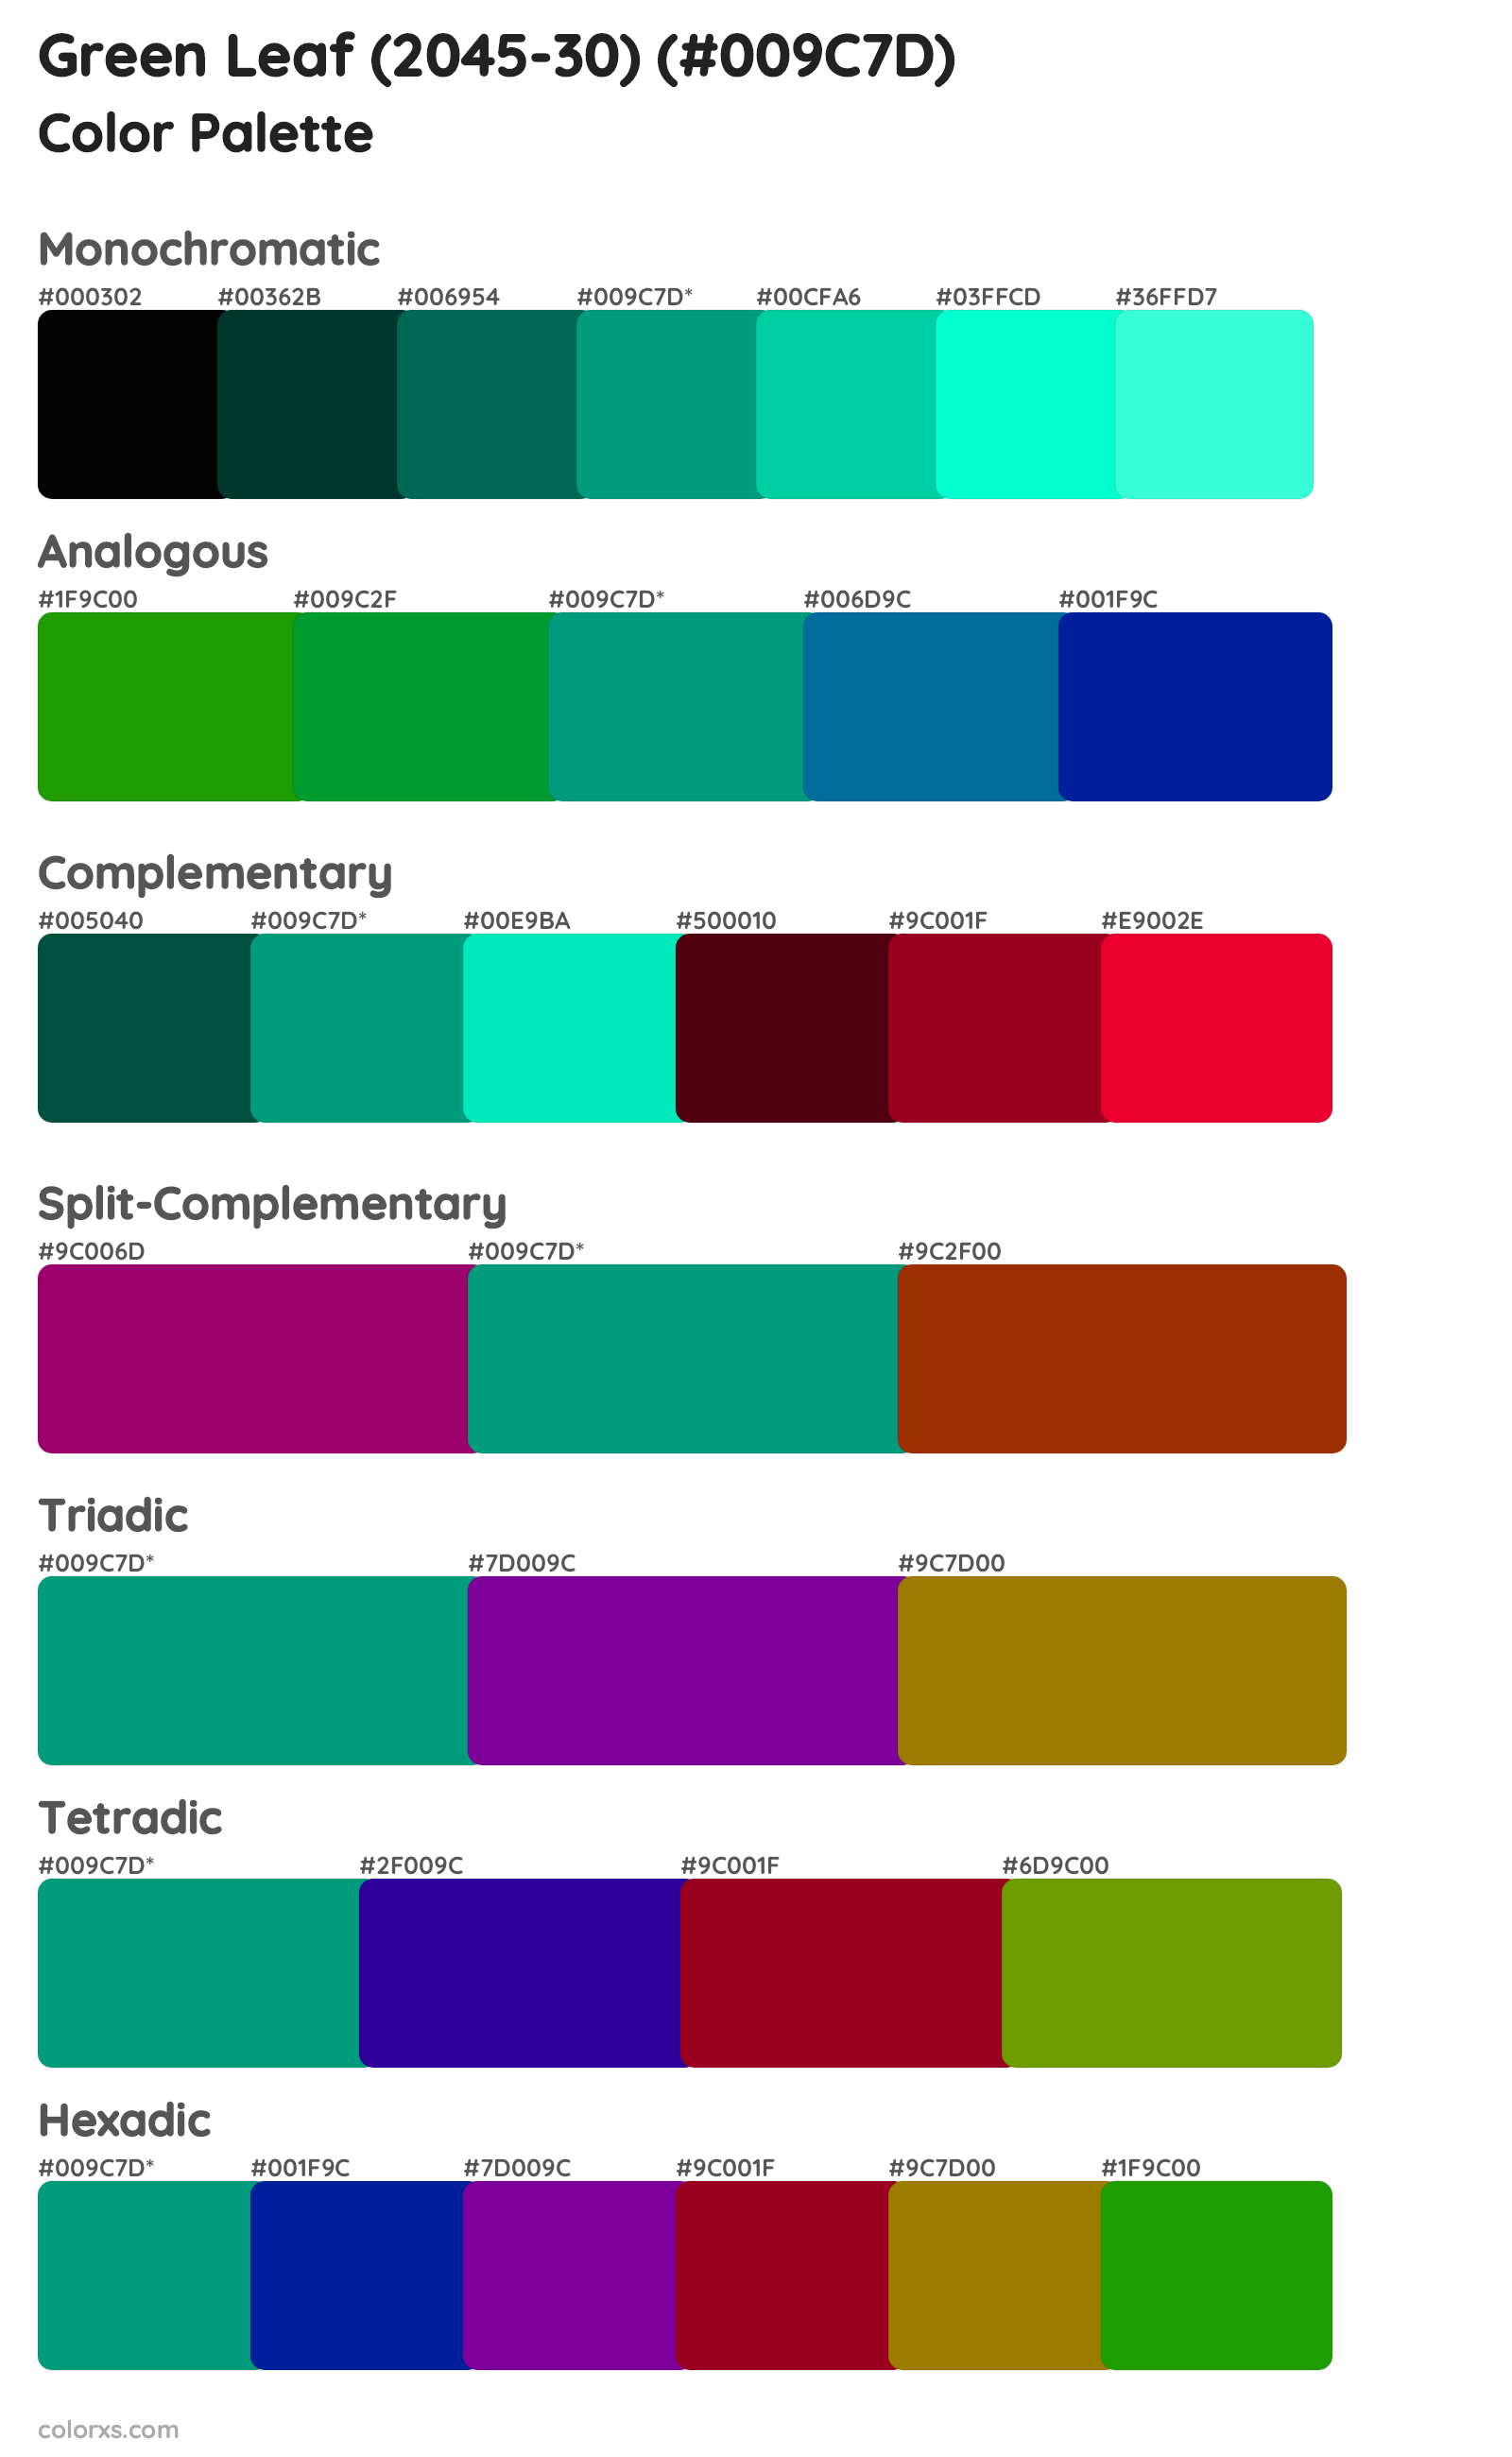 Green Leaf (2045-30) Color Scheme Palettes